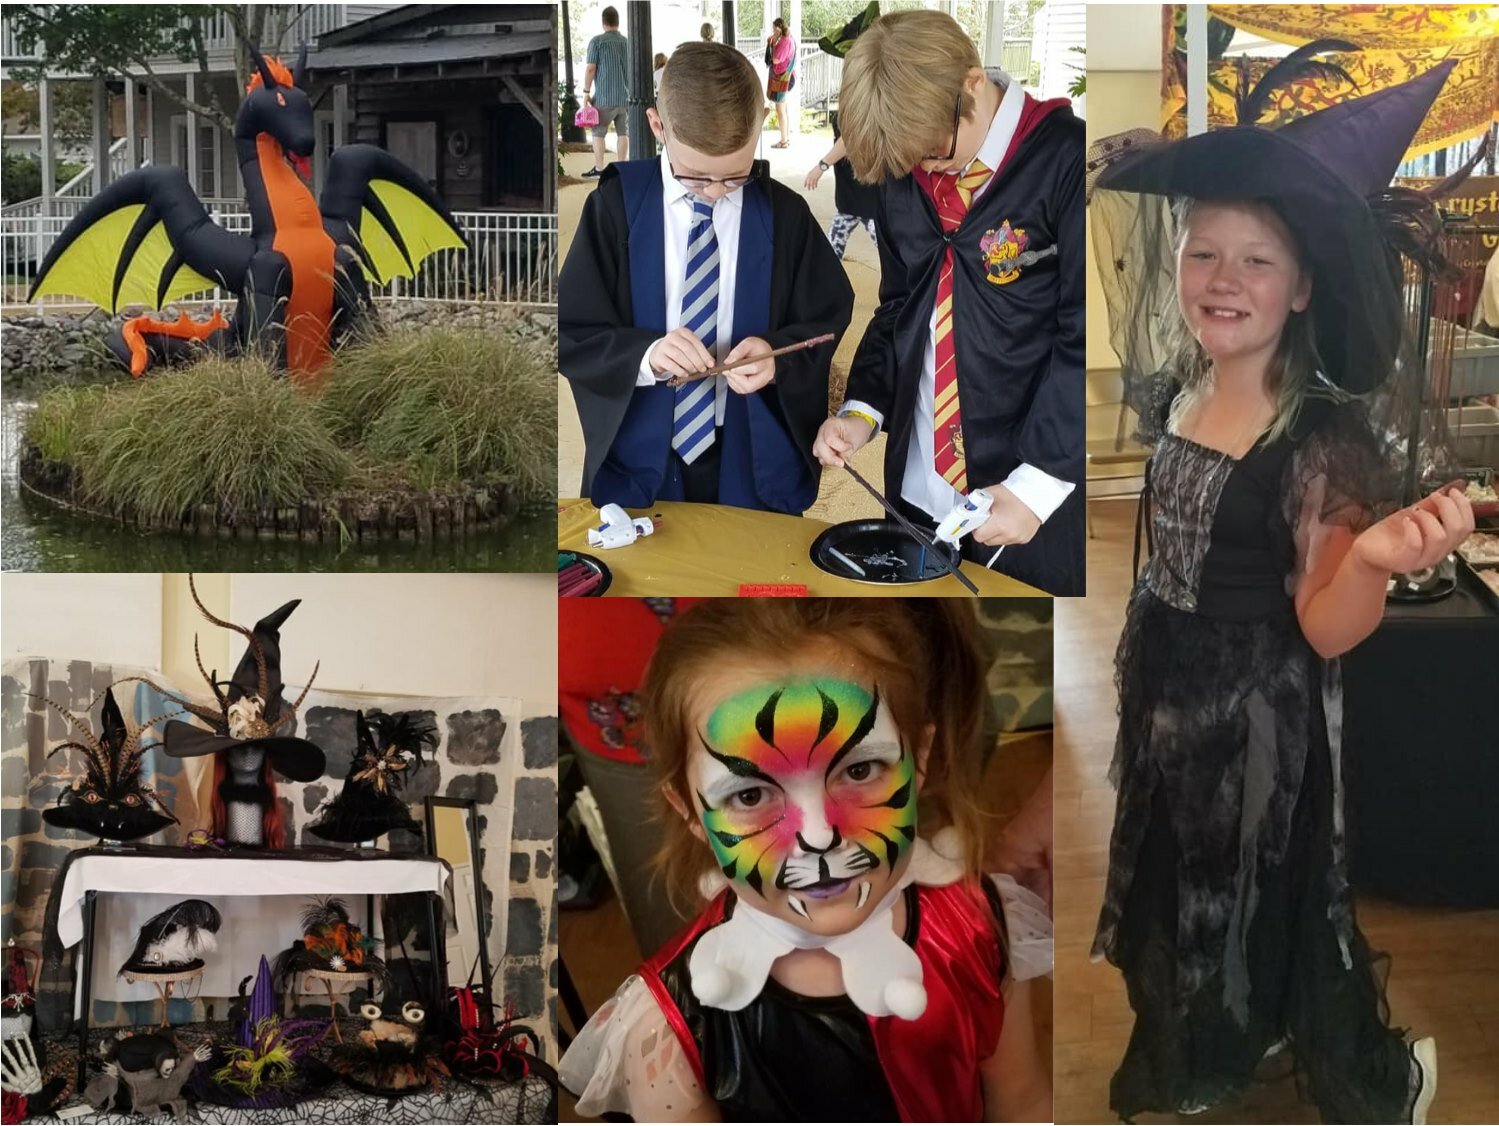 Scenes from Hogsmeade Halloween Festival 2019